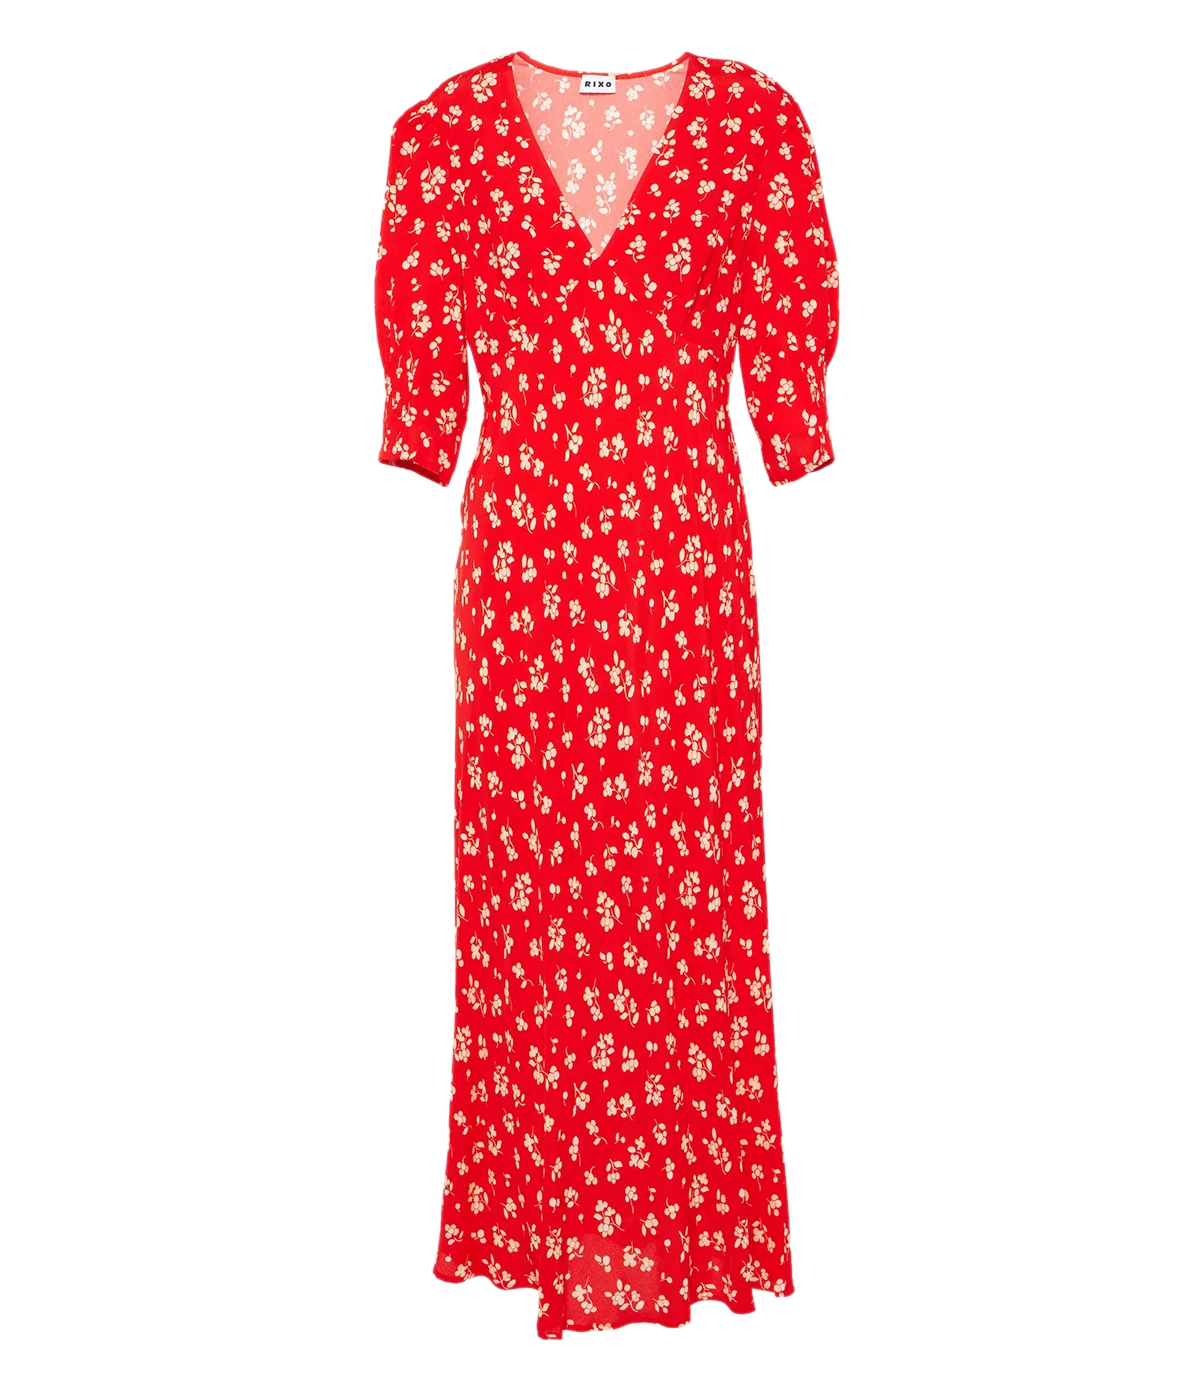 Zadie Dress in Red Floral